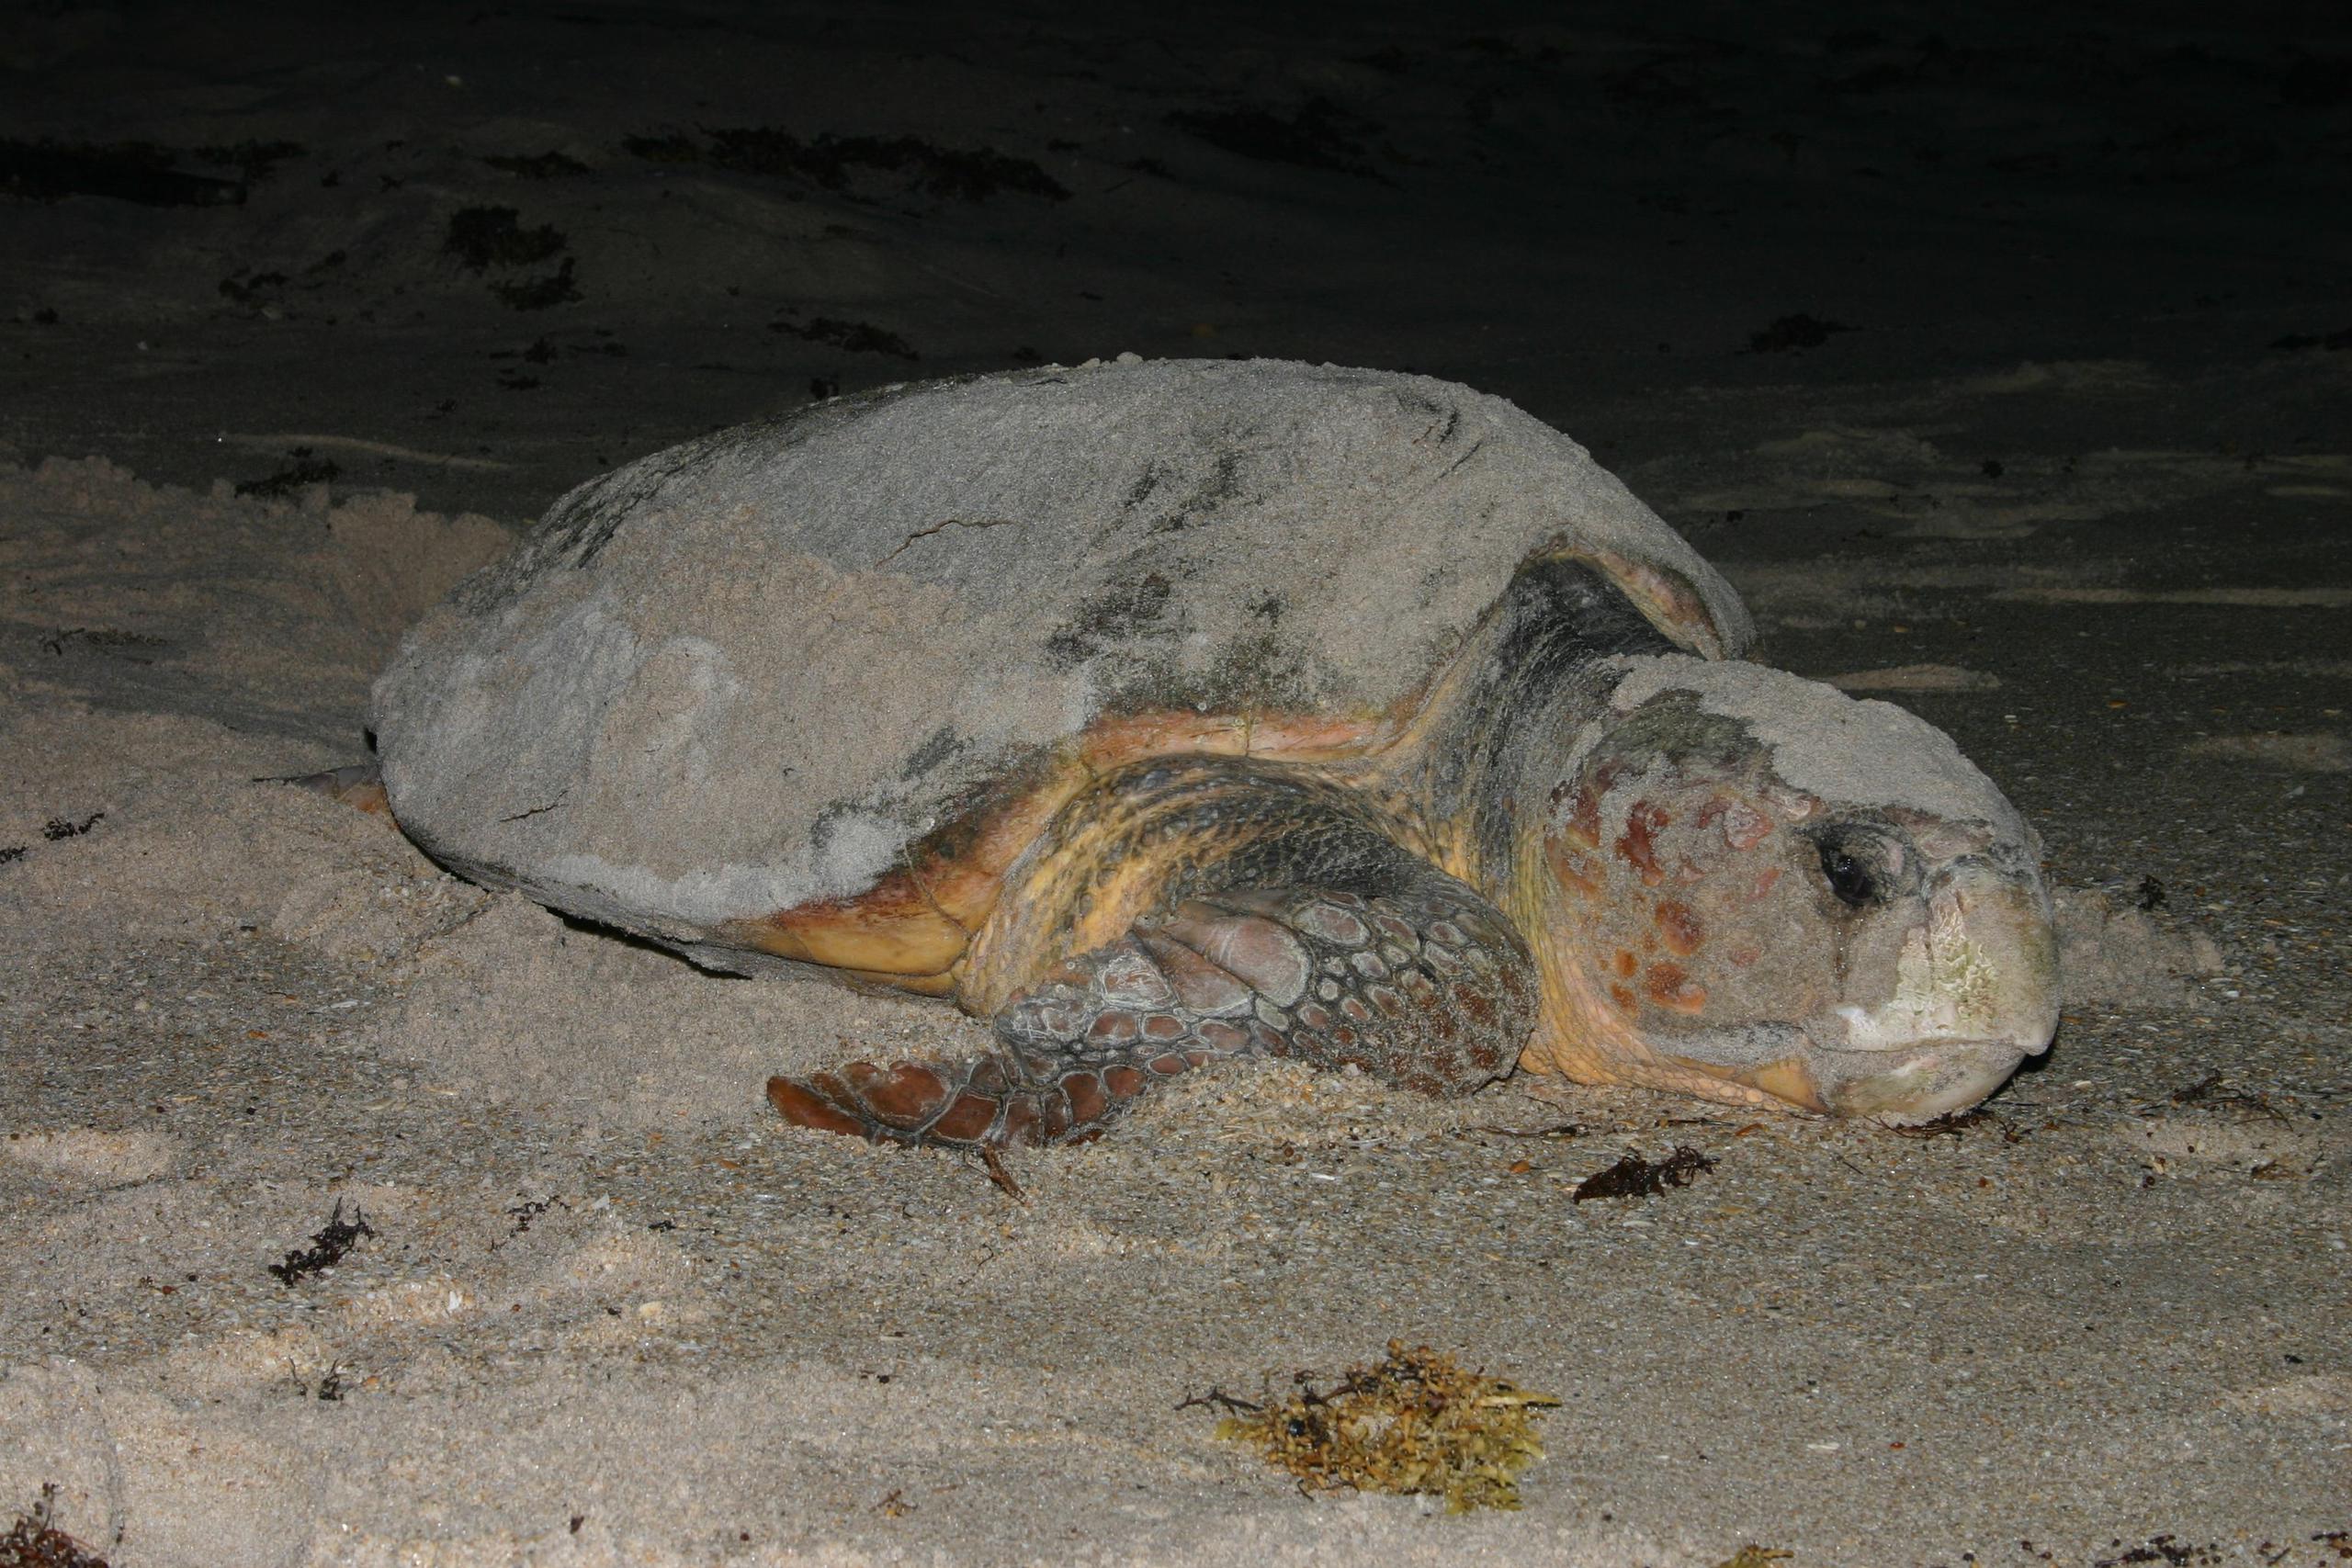 Una tortuga boba (loggerhead) hembra en Tybee Island, Georgia (Estados Unidos). Según un informe, durante sus aproximadamente 50 años de vida, esta tortuga pondrá alrededor de 4,200 huevos.